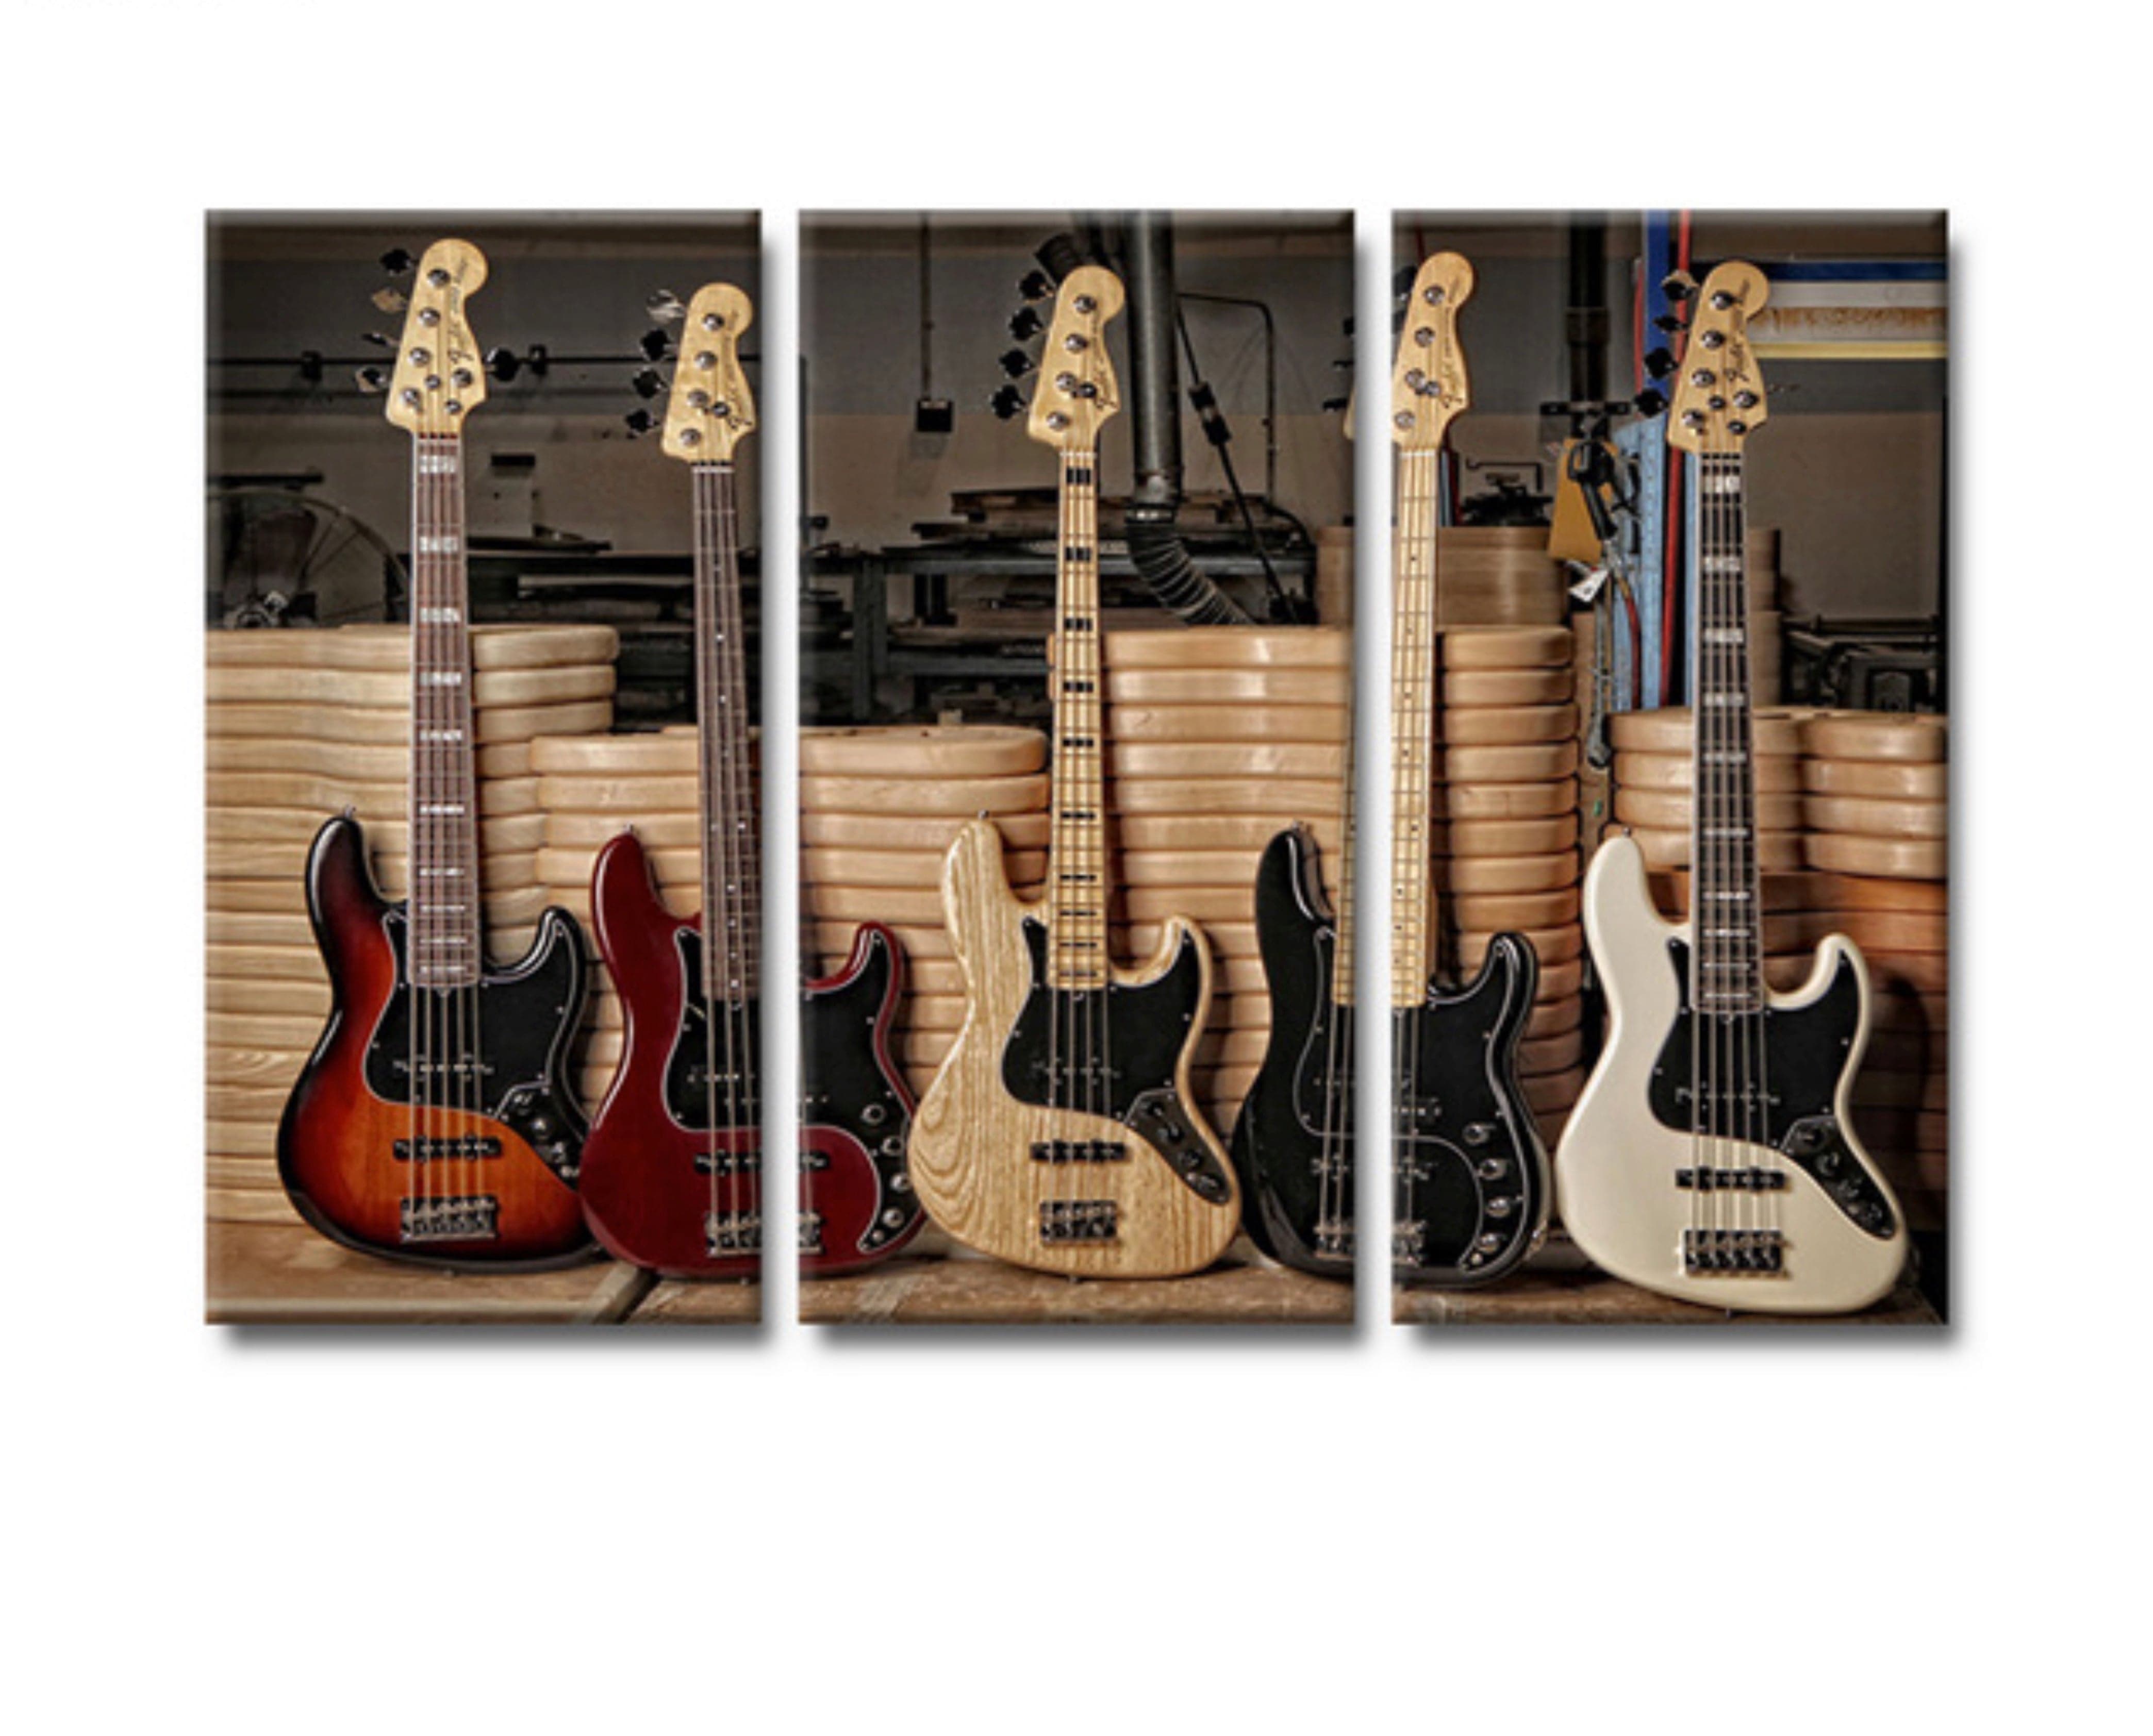 Framed 3 Panels - Guitars